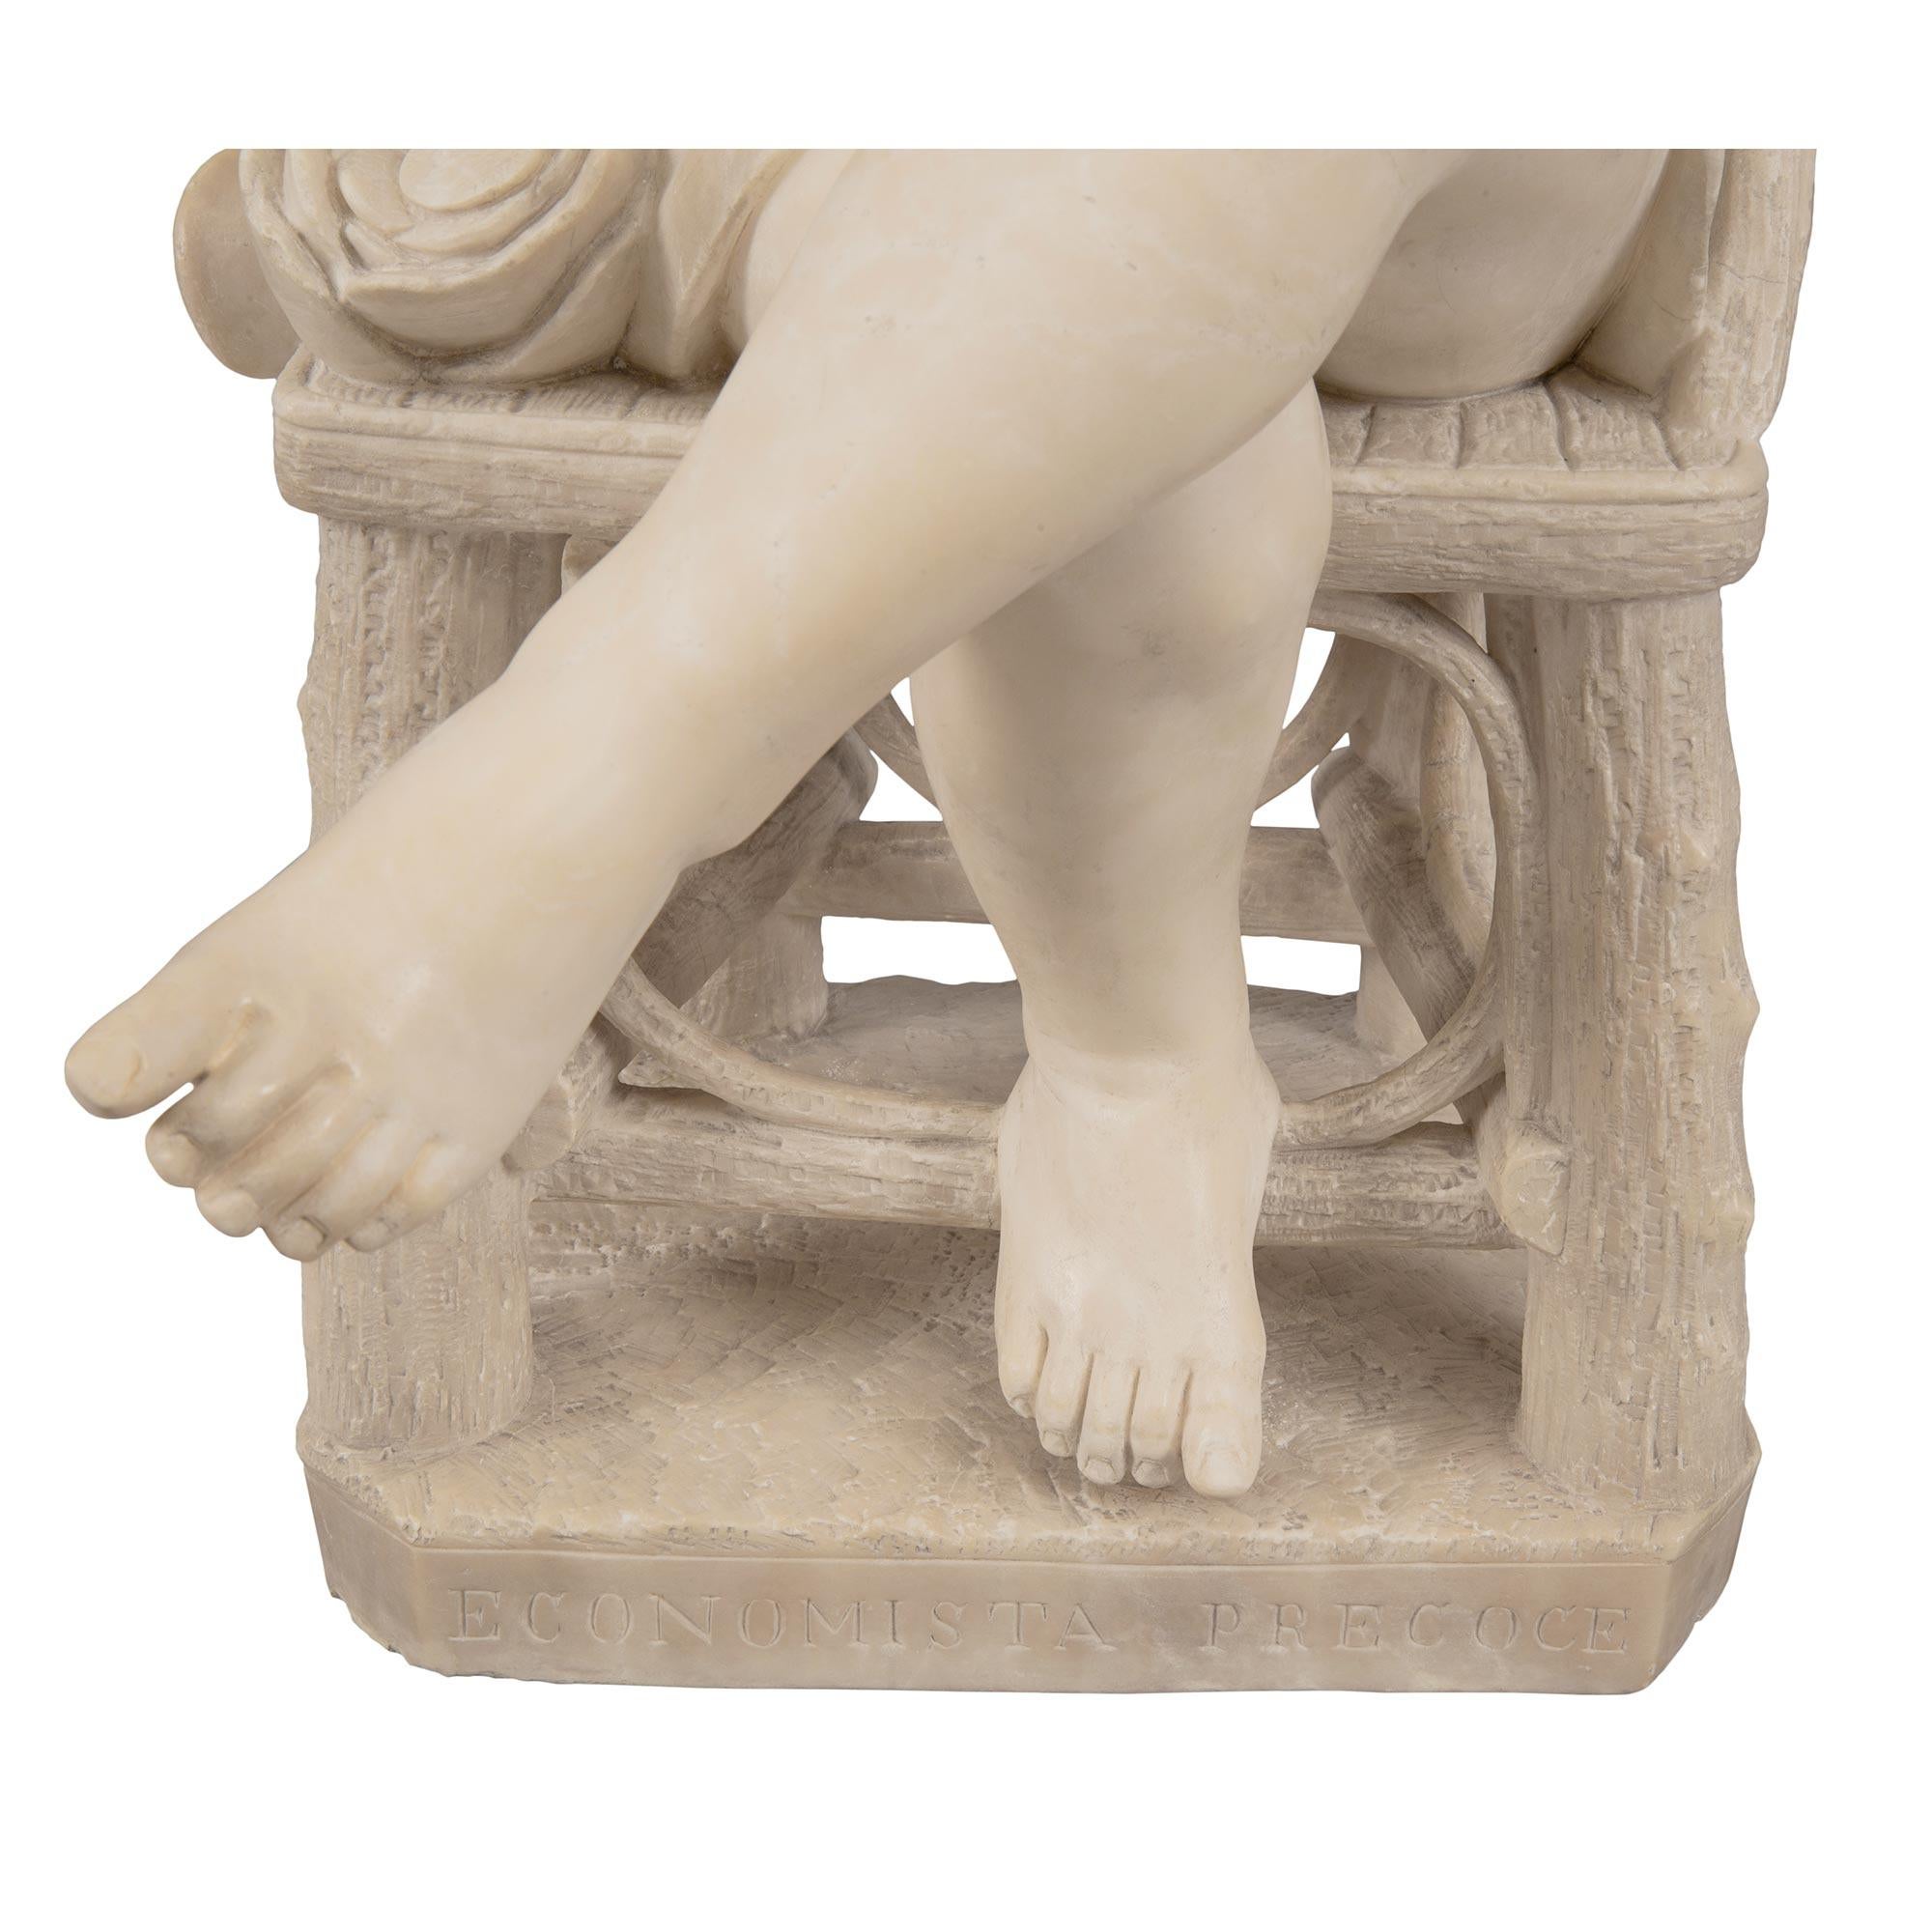 Italian 19th Century White Carrara Marble Statue Titled ‘Economista Precoce’ For Sale 5